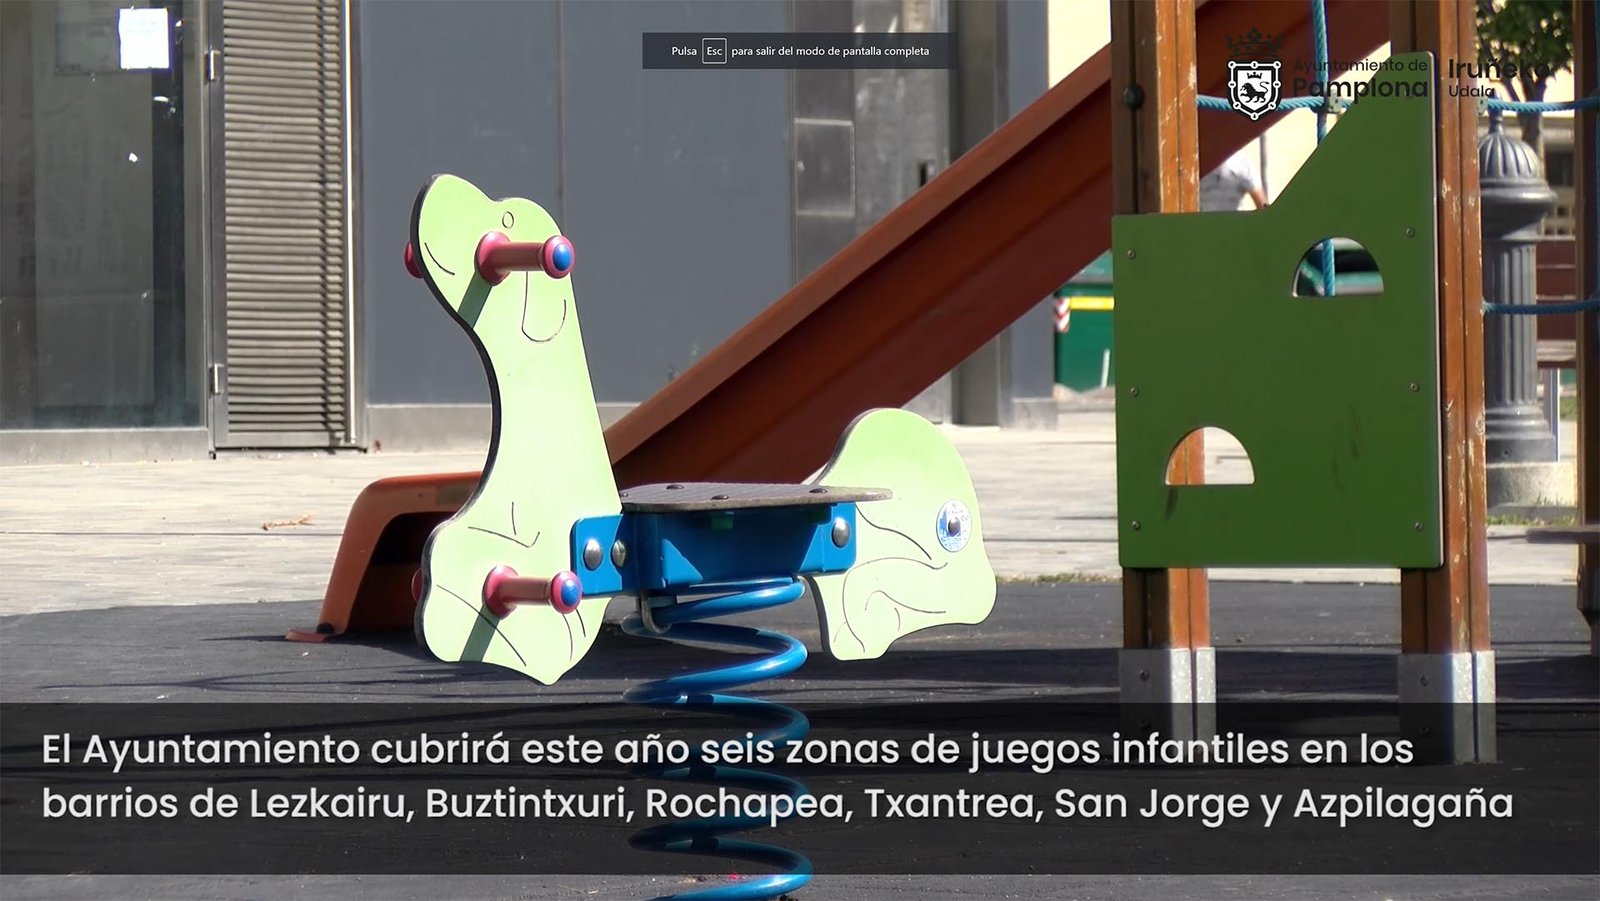 El Ayuntamiento de Pamplona renovará los juegos infantiles próximos al Grupo Urdánoz (Etxabakoitz), aprovechando para cubrirlos